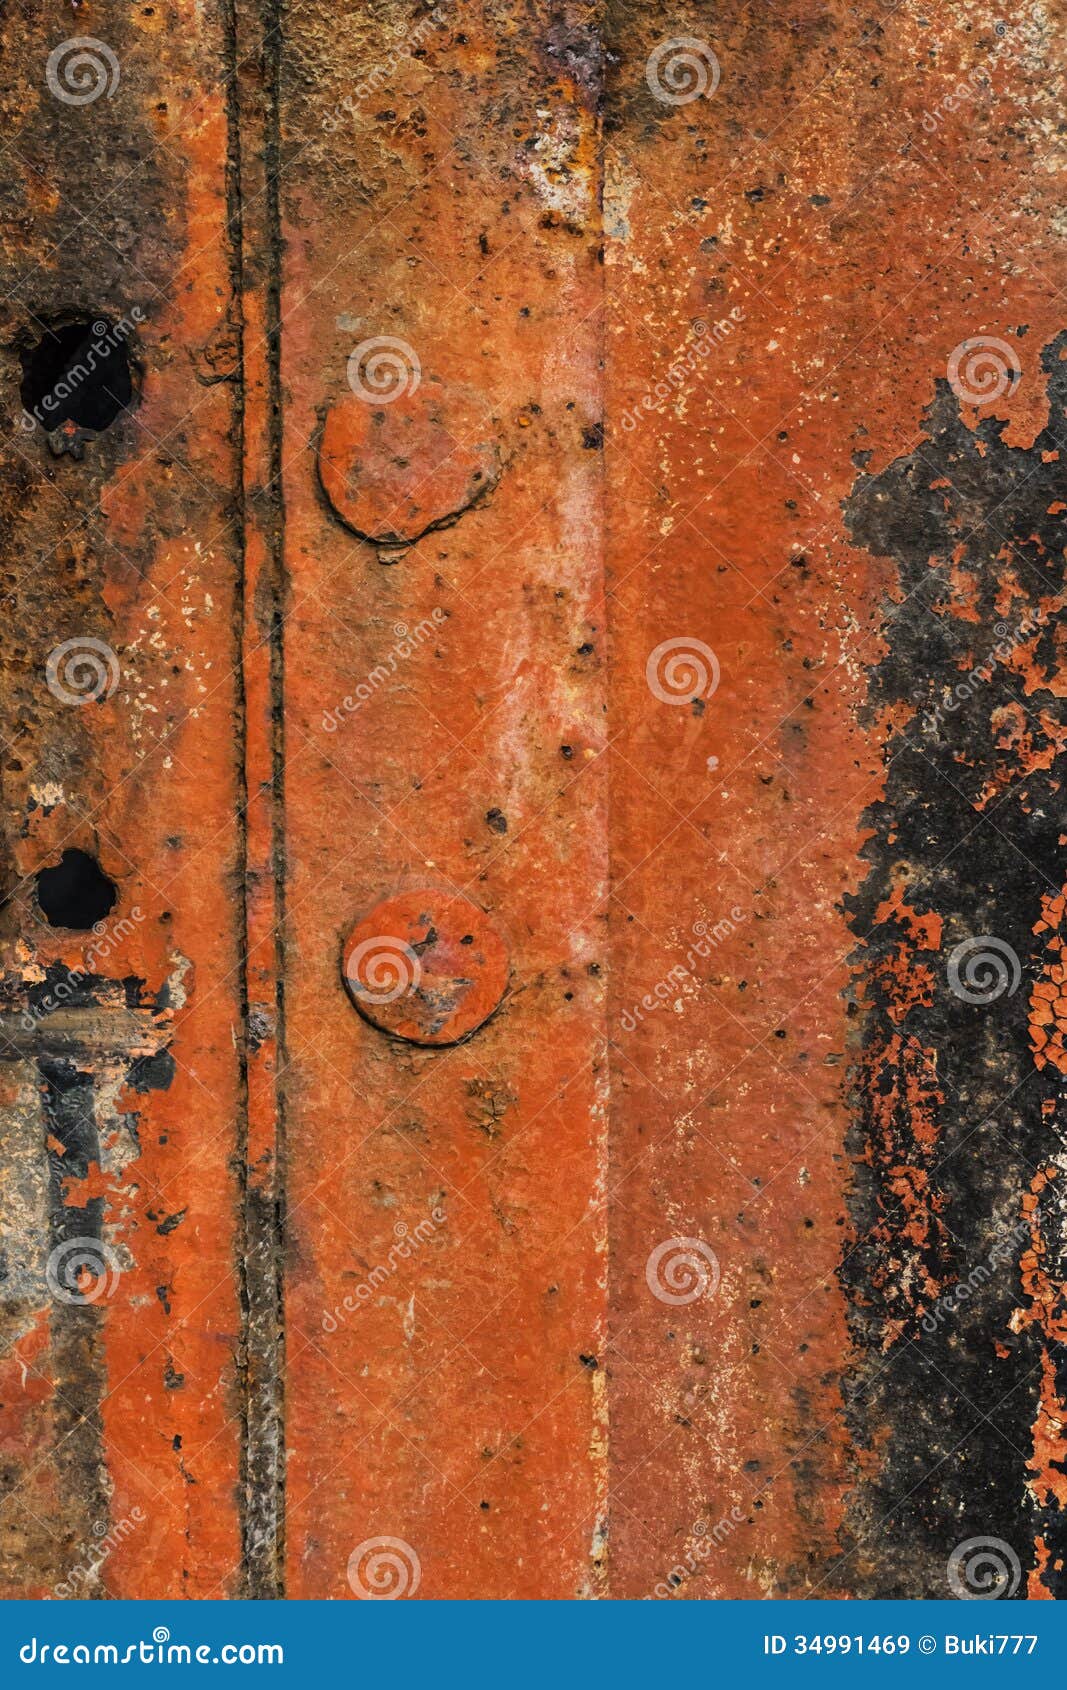 Rust brown цвет фото 119